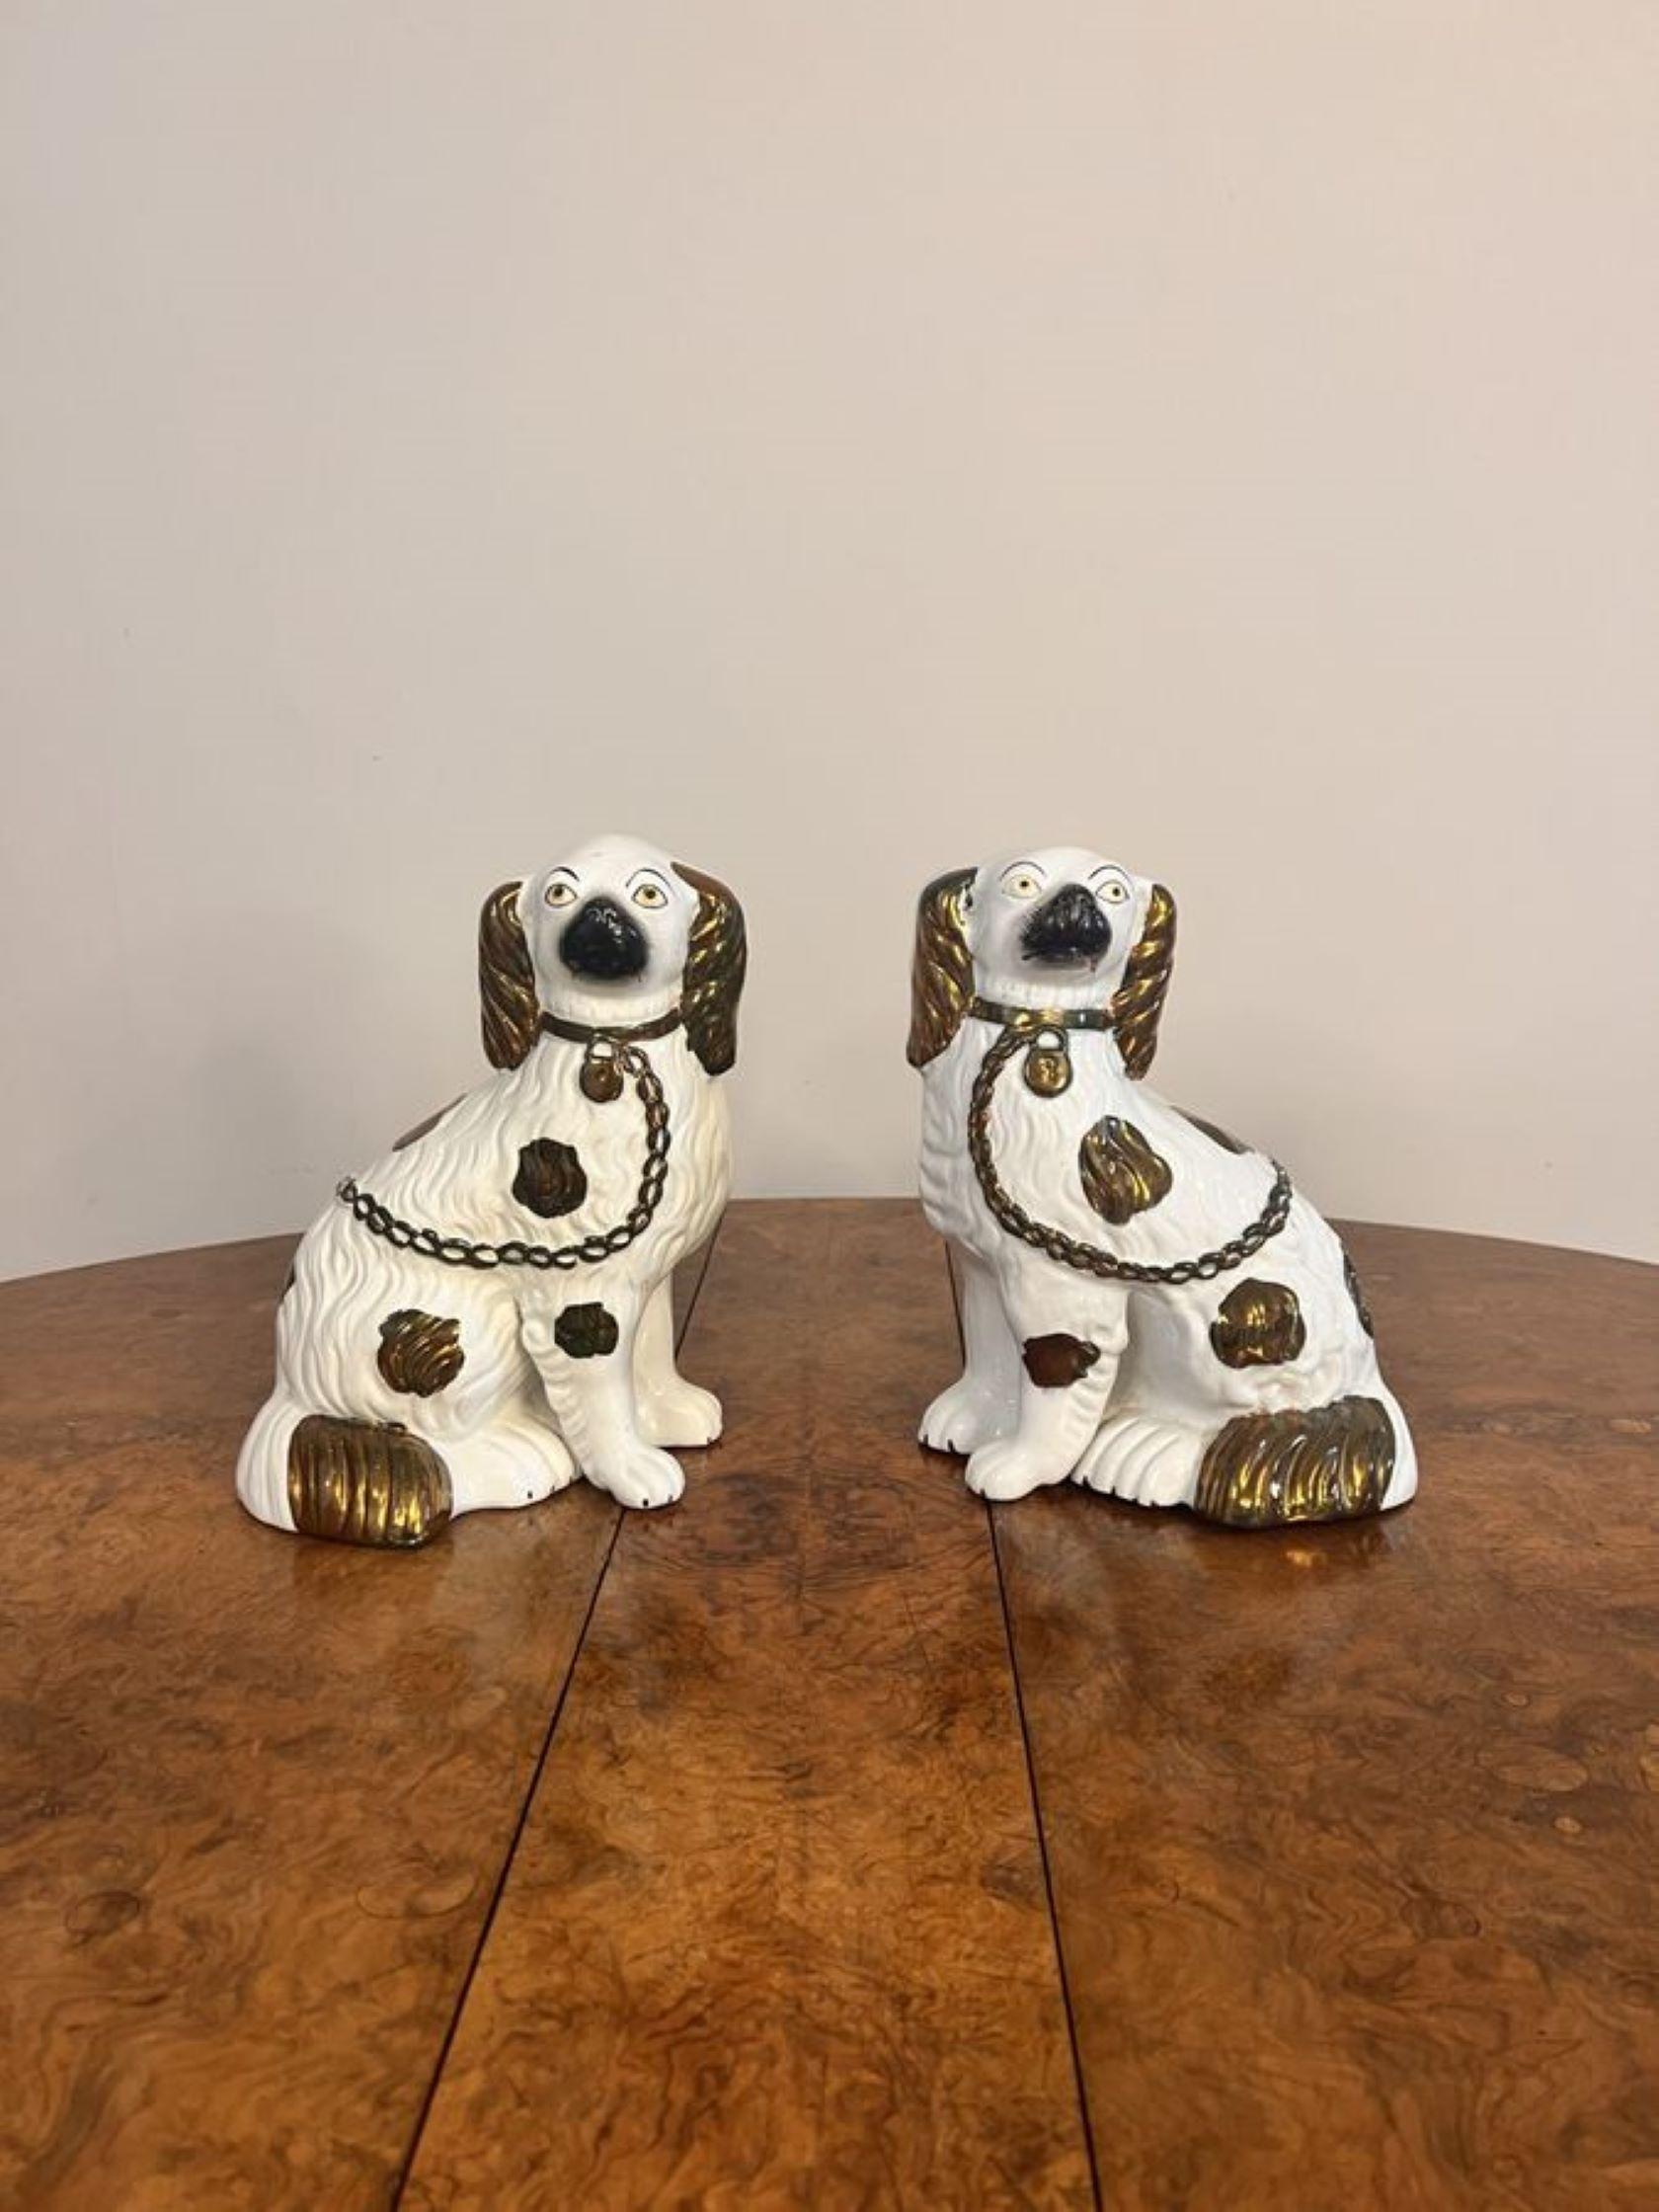 Hochwertiges Paar antiker viktorianischer Staffordshire-Hunde, beide sitzende Spaniels mit ausgestreckten Vorderbeinen, in passenden kupferbraunen und weißen Mänteln, Halsbändern, Vorhängeschlössern und Ketten.

D. 1880